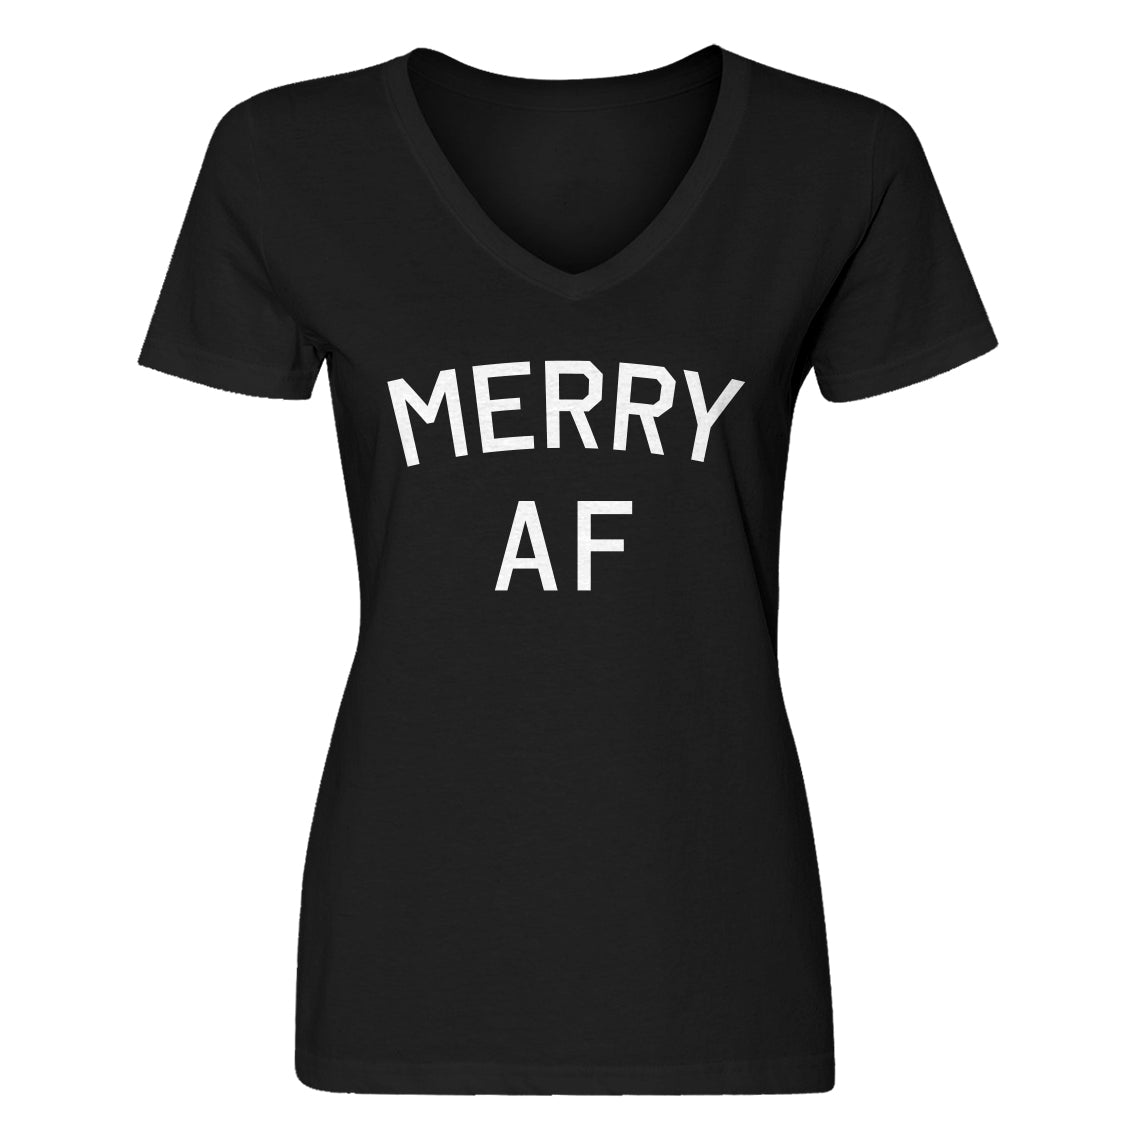 Womens Merry AF V-Neck T-shirt